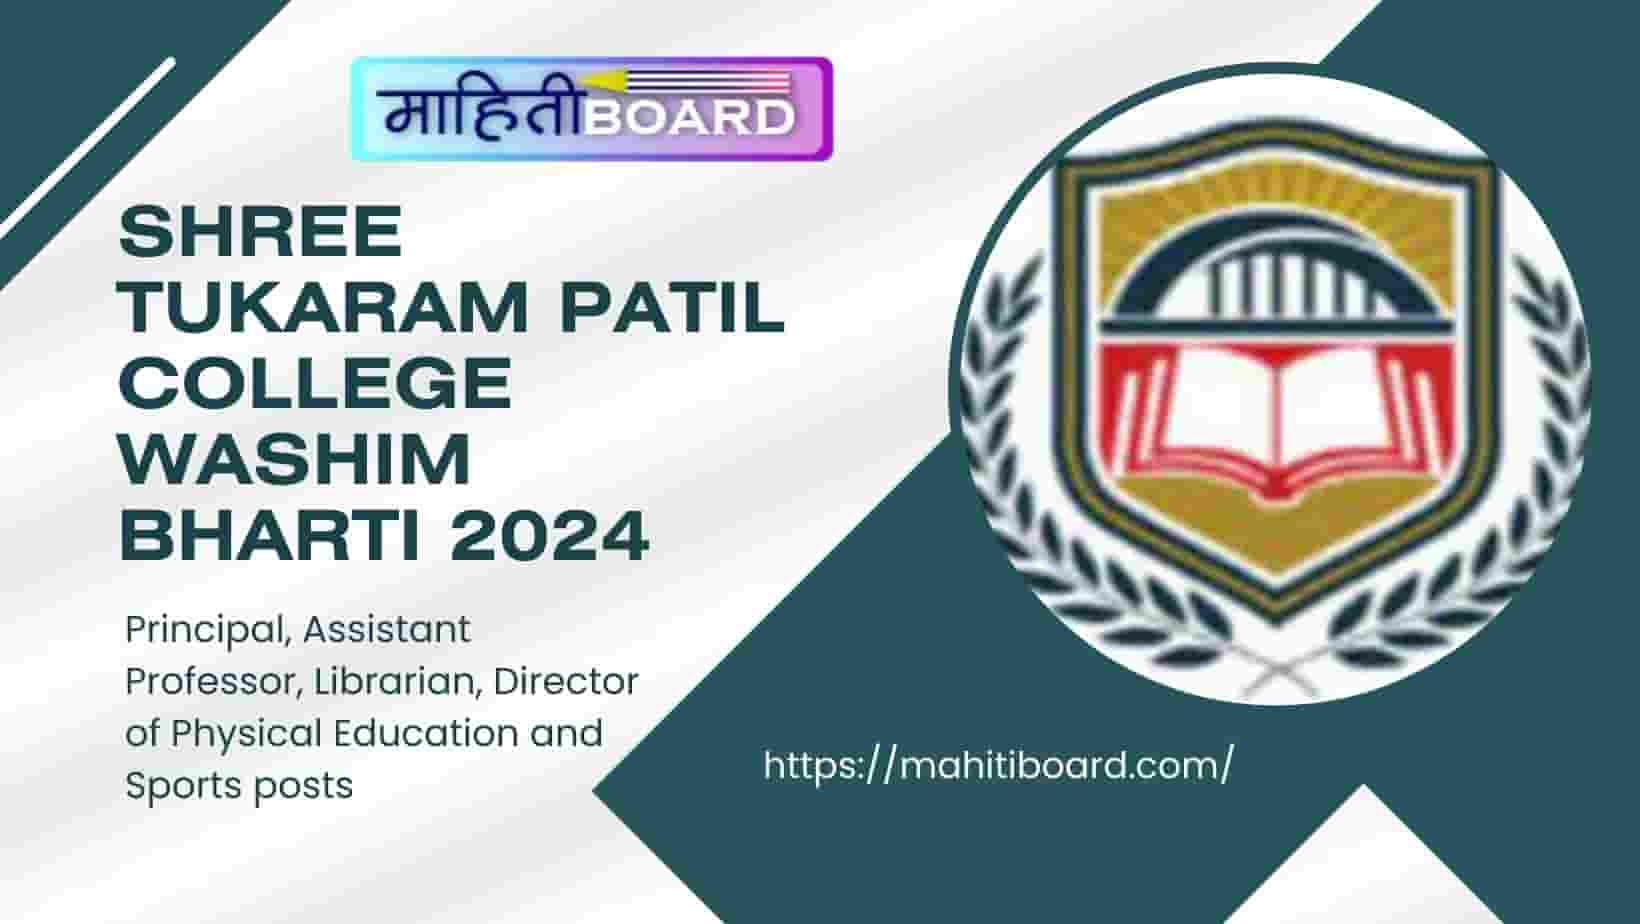 Shree Tukaram Patil College Washim Bharti 2024